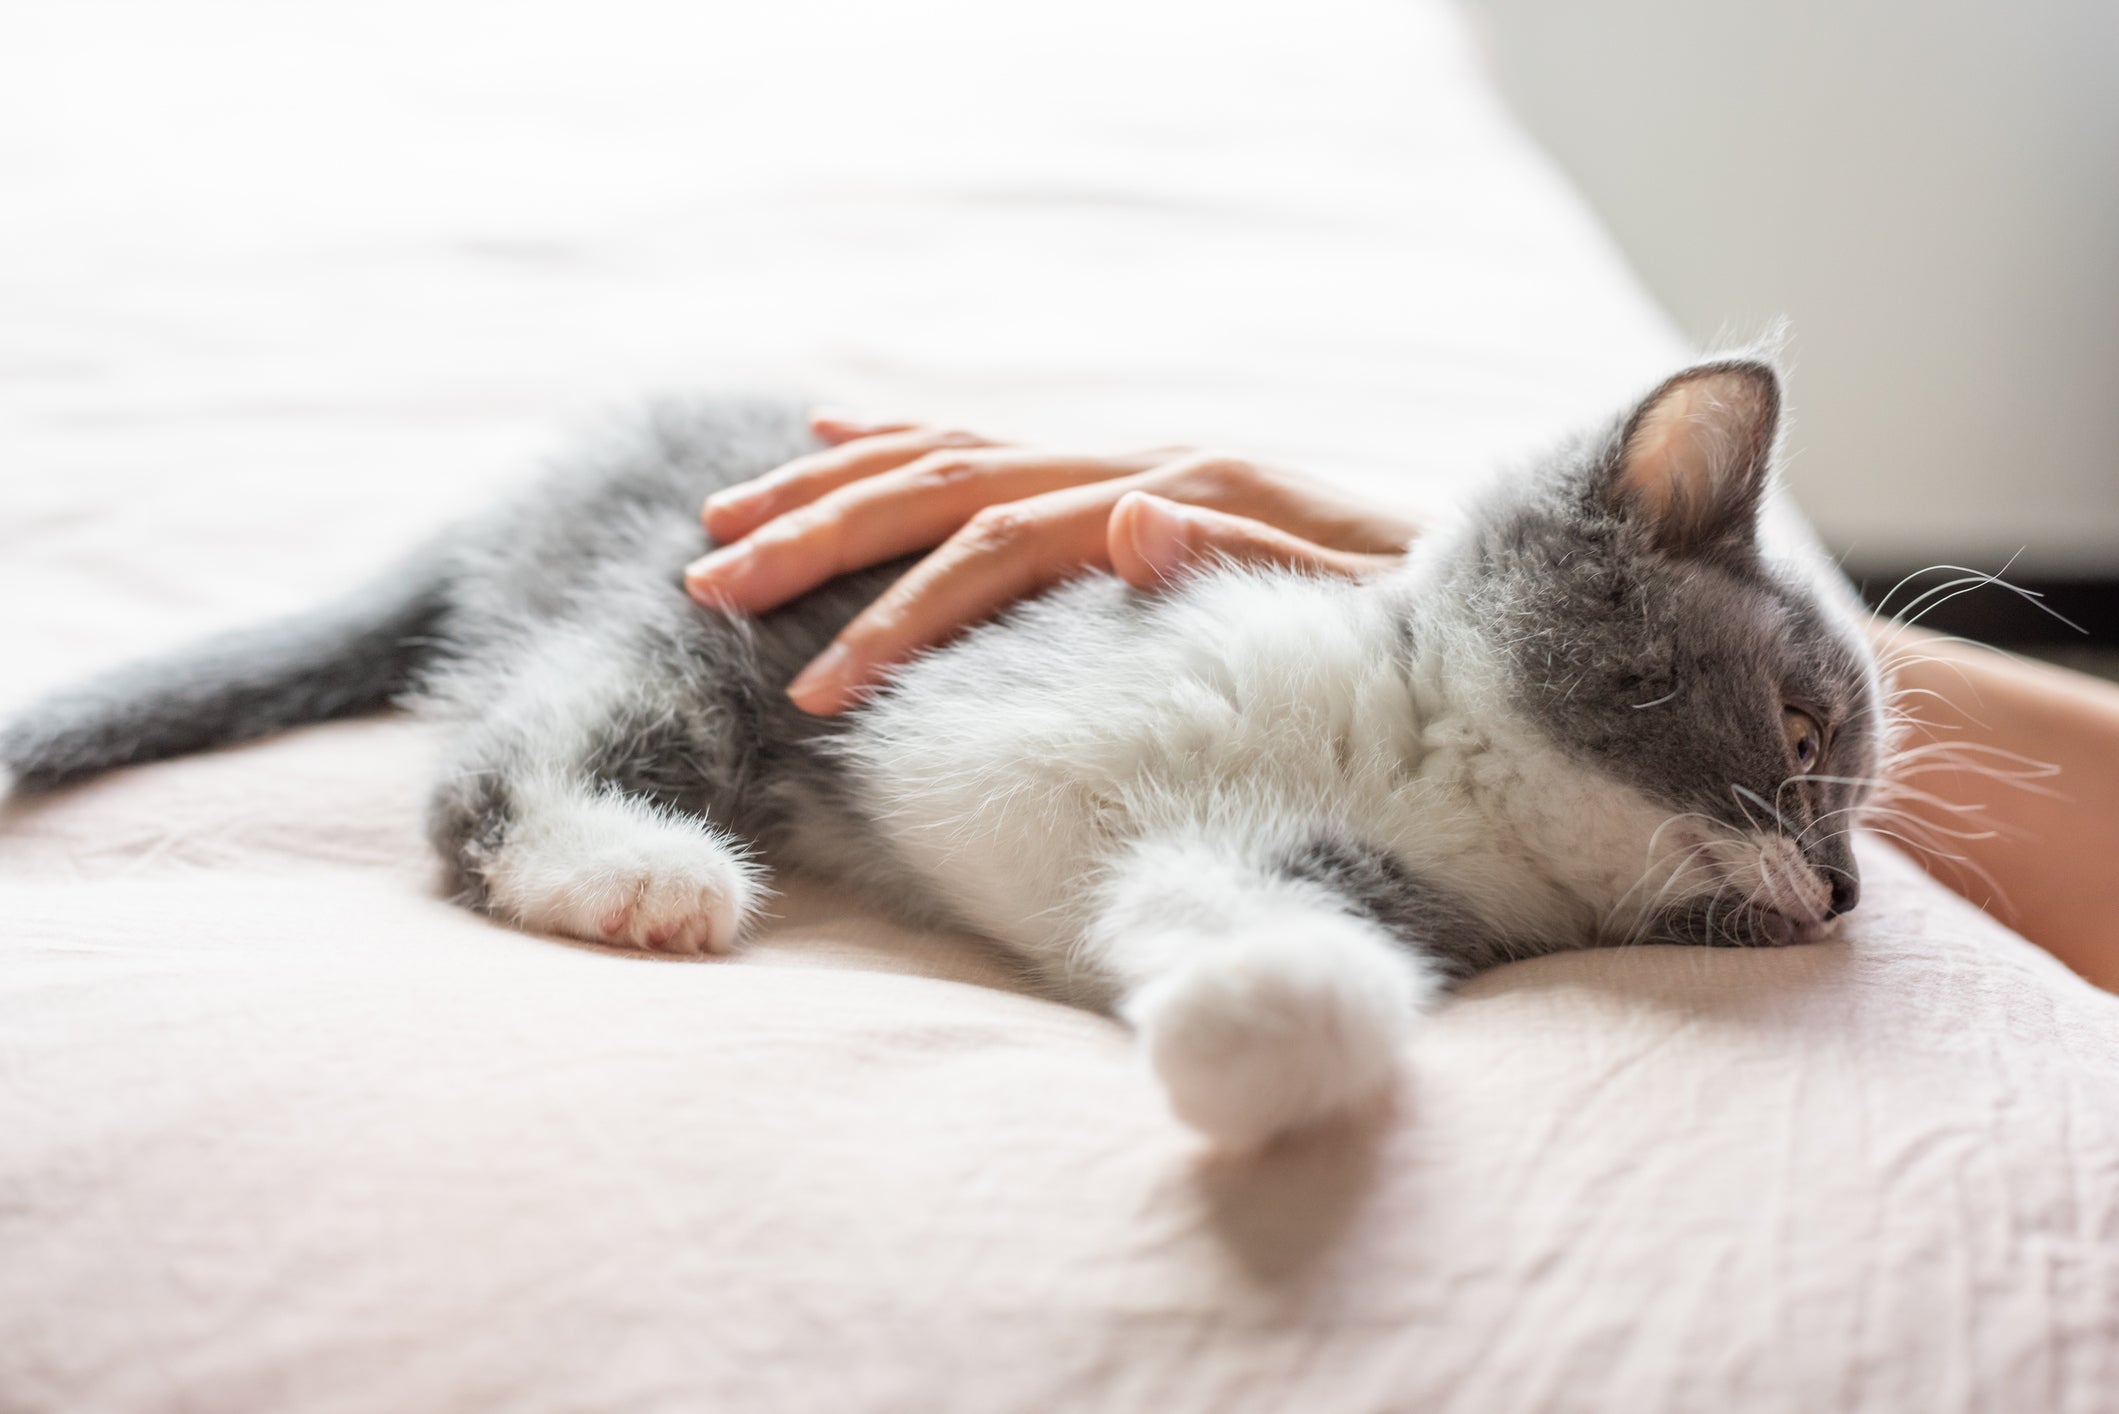 Gato filhote cinza e branco deitado recebendo carinho de mão humana